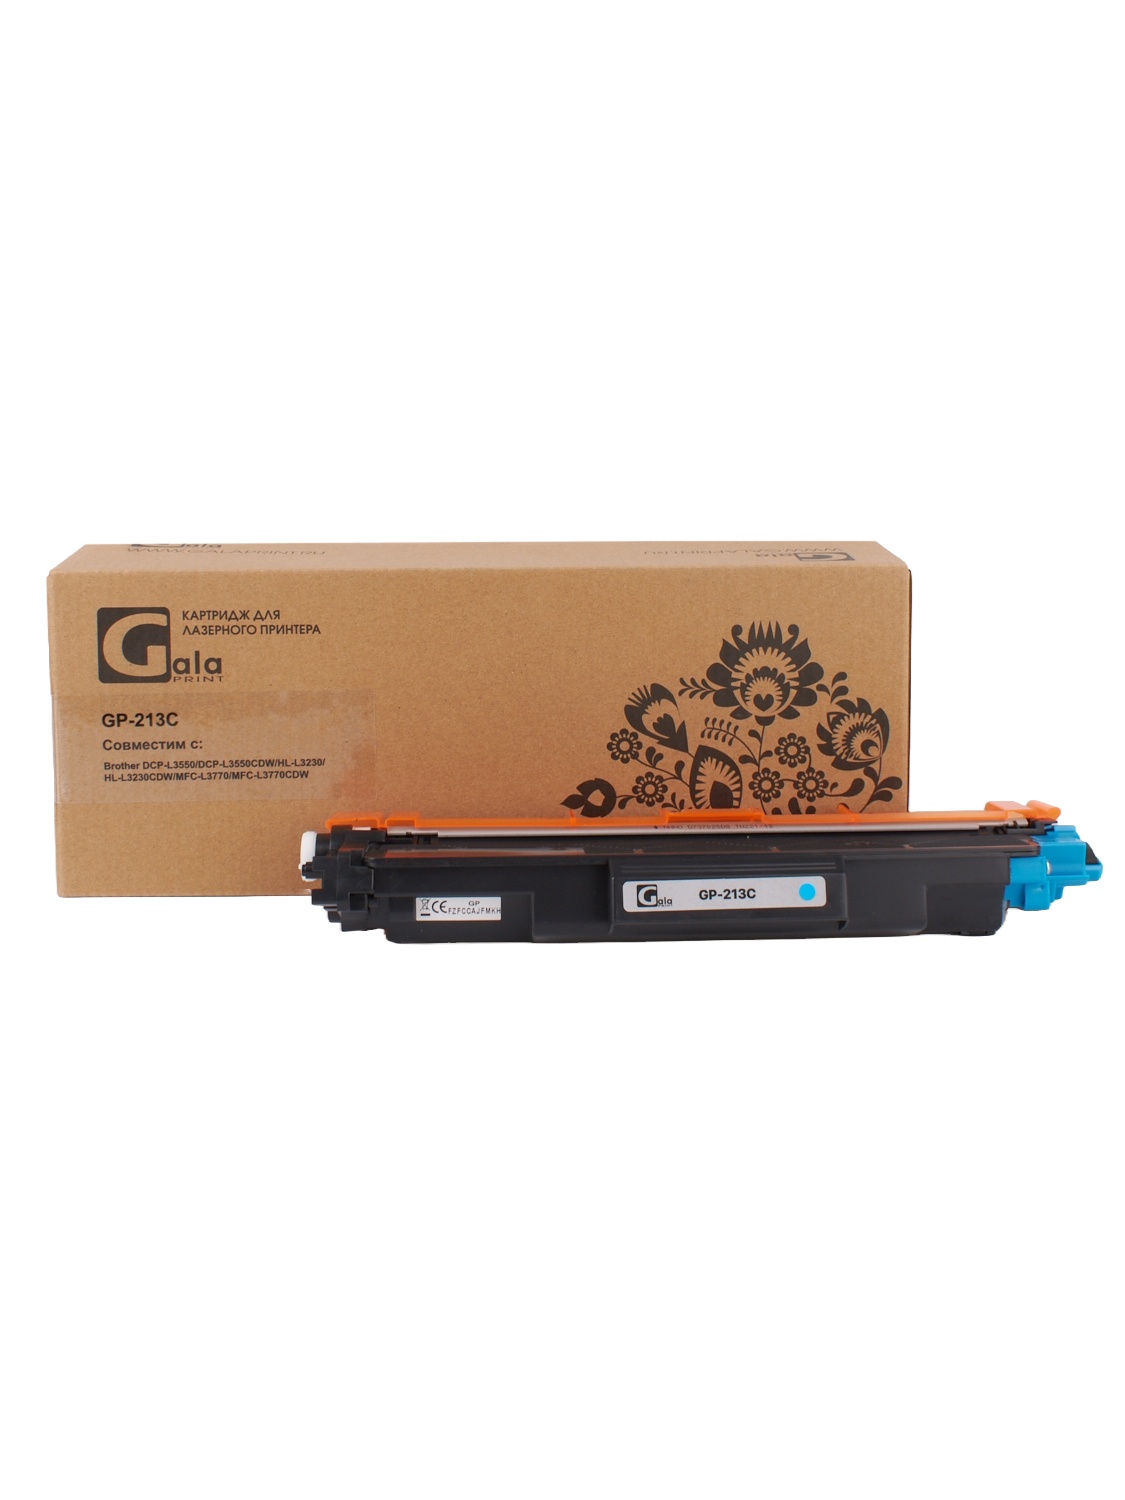 Картридж GP-TN-213C для принтеров Brother DCP-L3550/DCP-L3550CDW/HL-L3230/HL-L3230CDW/MFC-L3770/MFC-L3770CDW Cyan 1300 копий GalaPrint